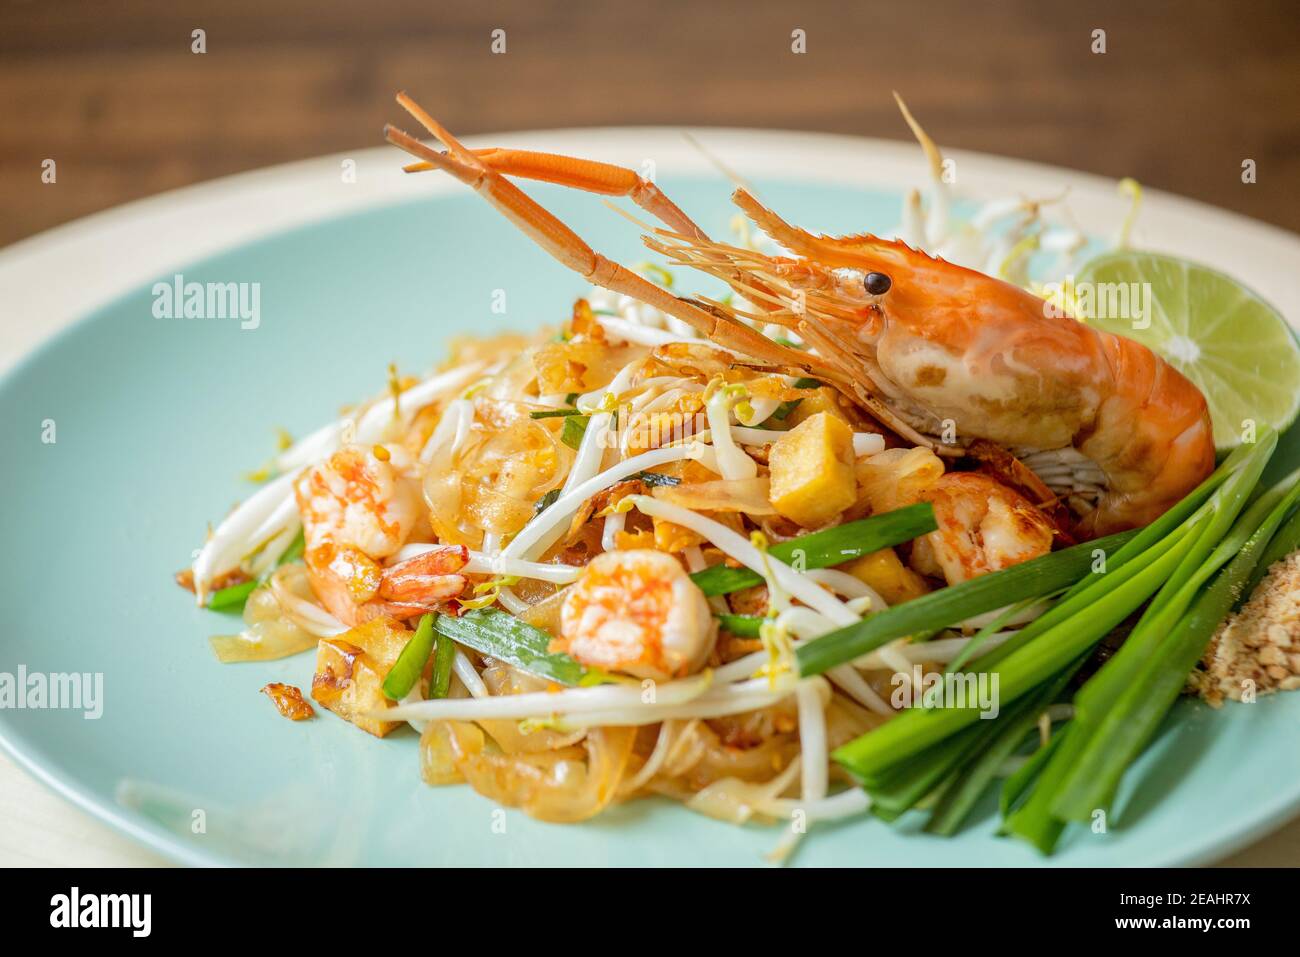 Nahaufnahme von köstlichen asiatischen Speisen, Hot Fresh Shrimp Pad Thai Nudelgericht garniert mit Krebse Frühlingszwiebeln und Limette Stockfoto